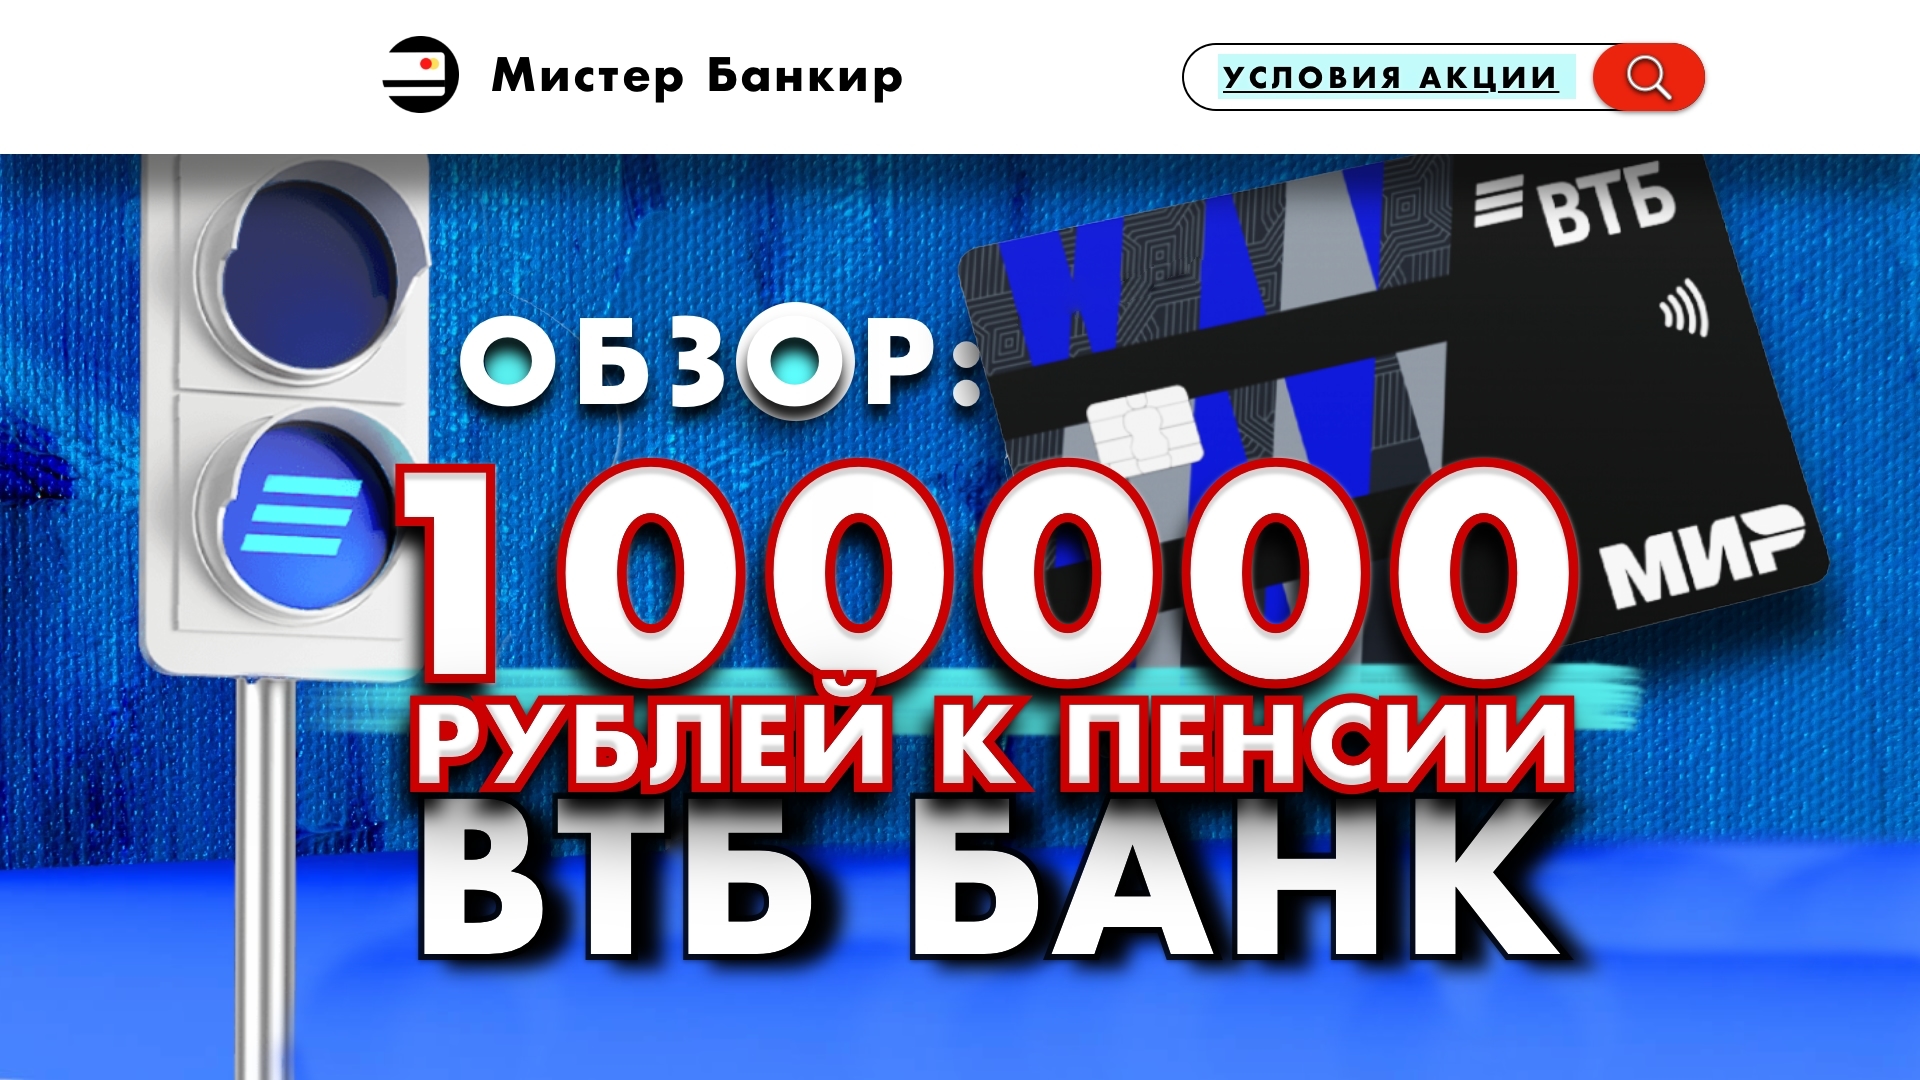 ВТБ 100000 рублей к пенсии УСЛОВИЯ акции для пенсионеров